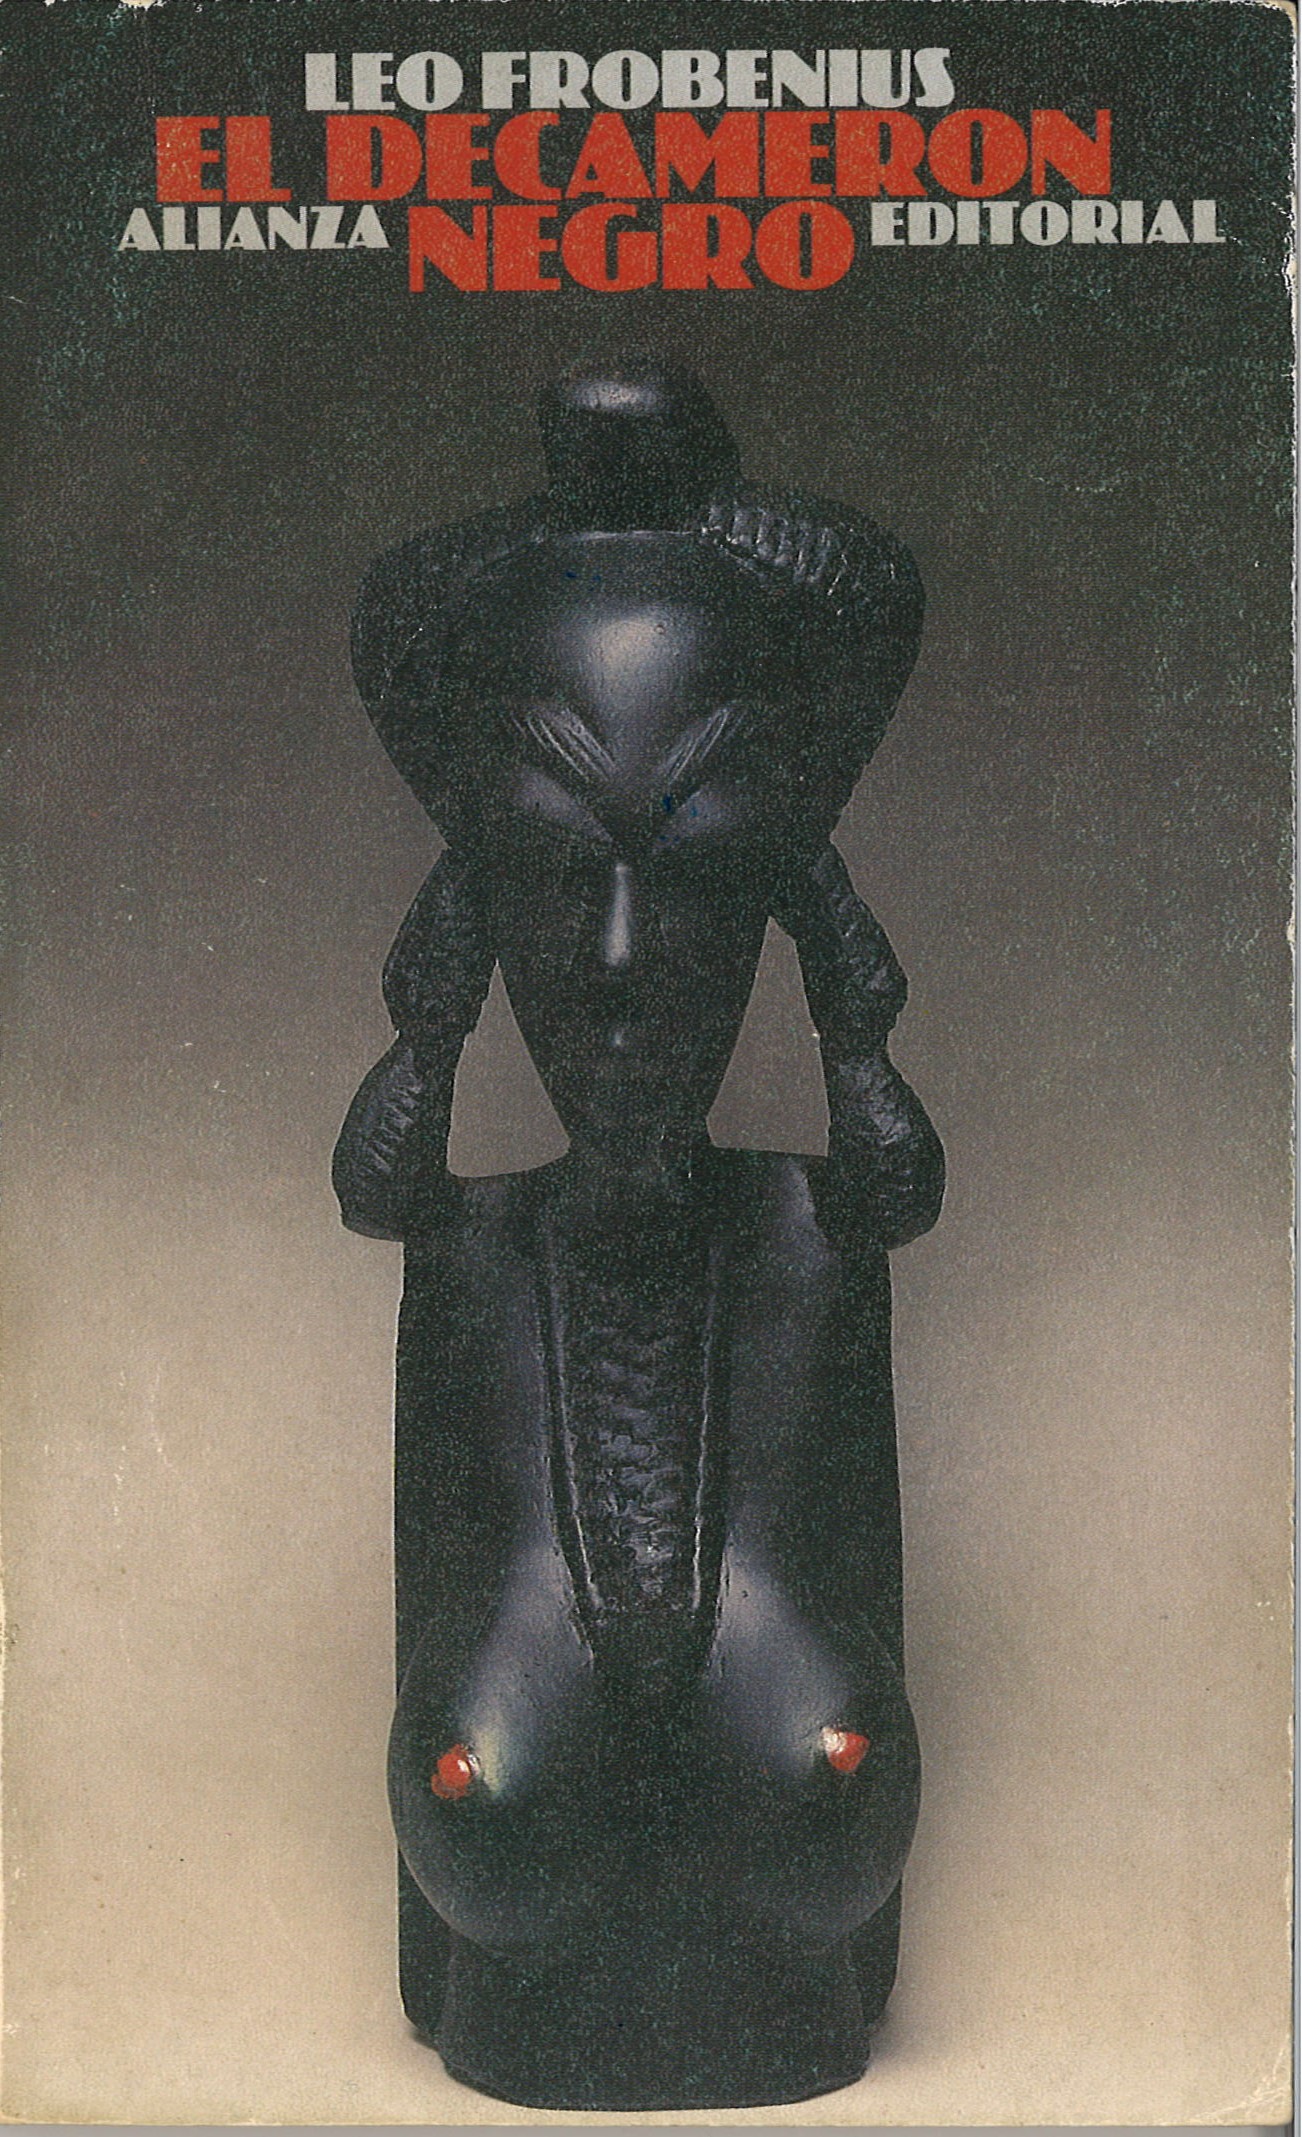 El Decamerón negro - Leo Frobenius-image